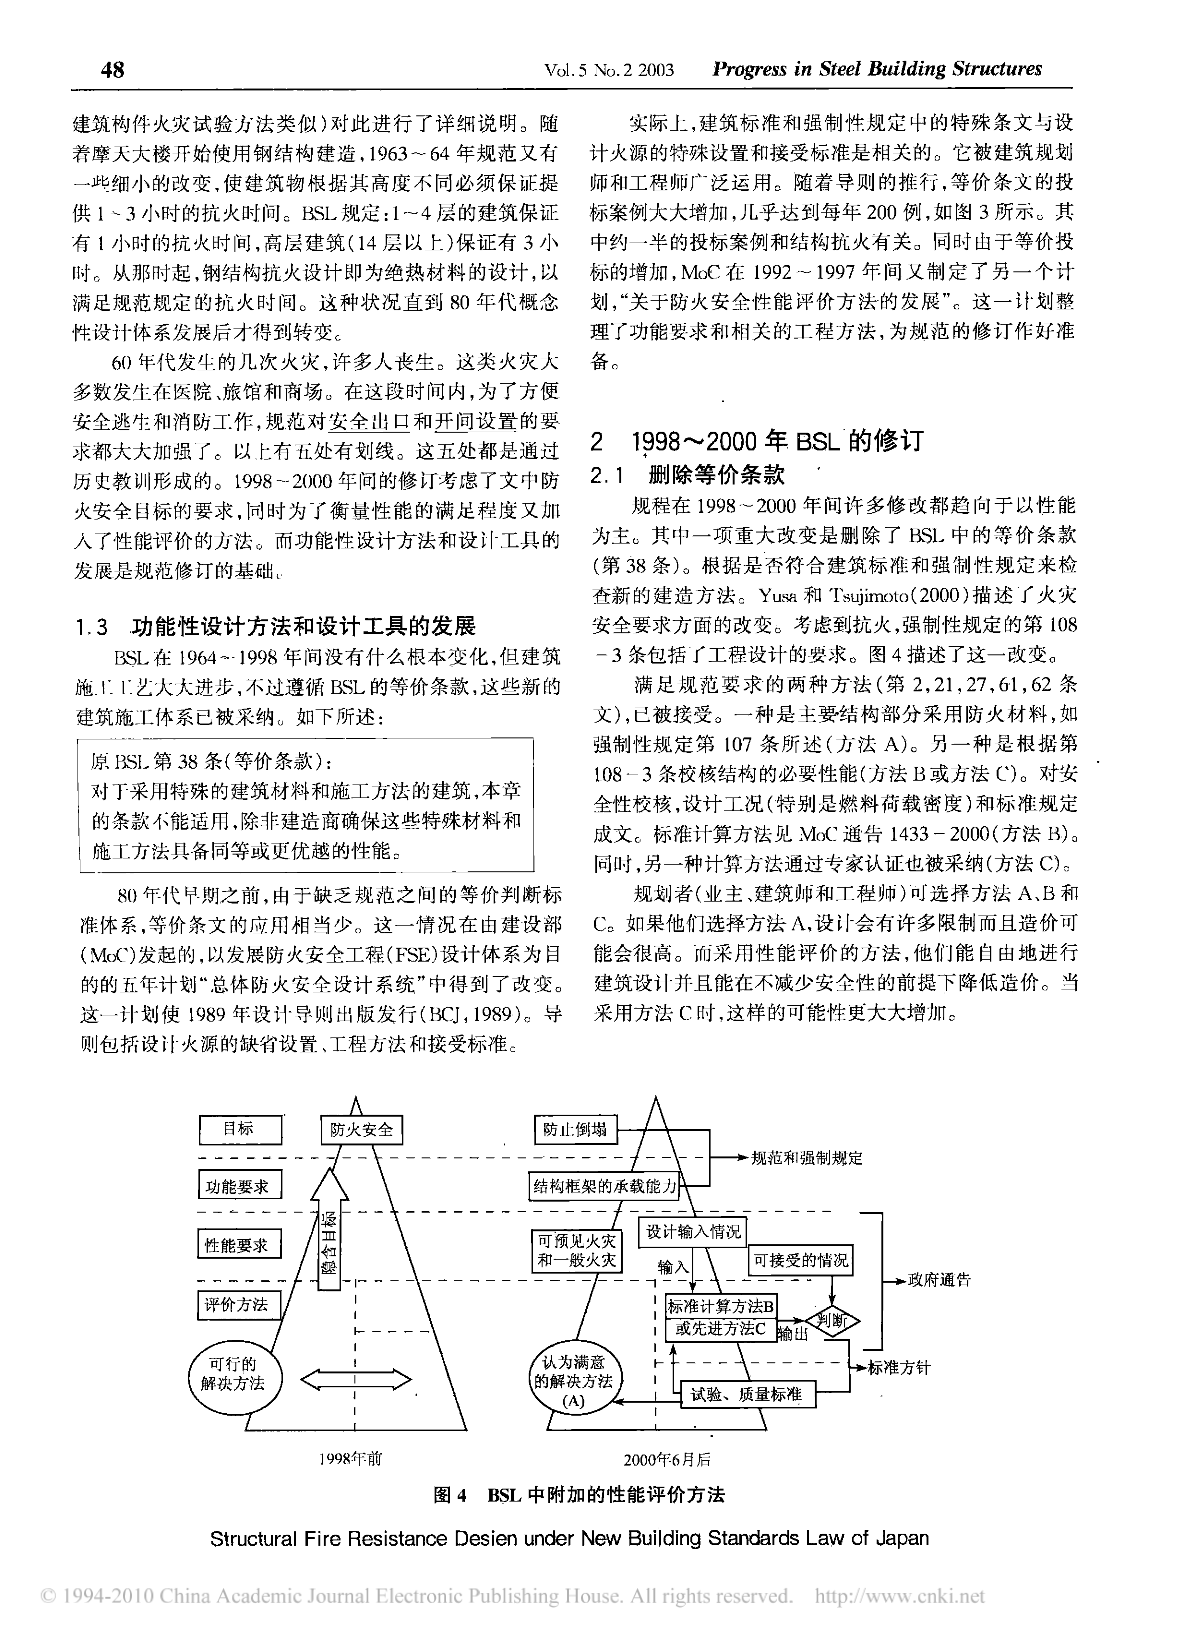 日本新建筑标准的结构抗火设计-图二